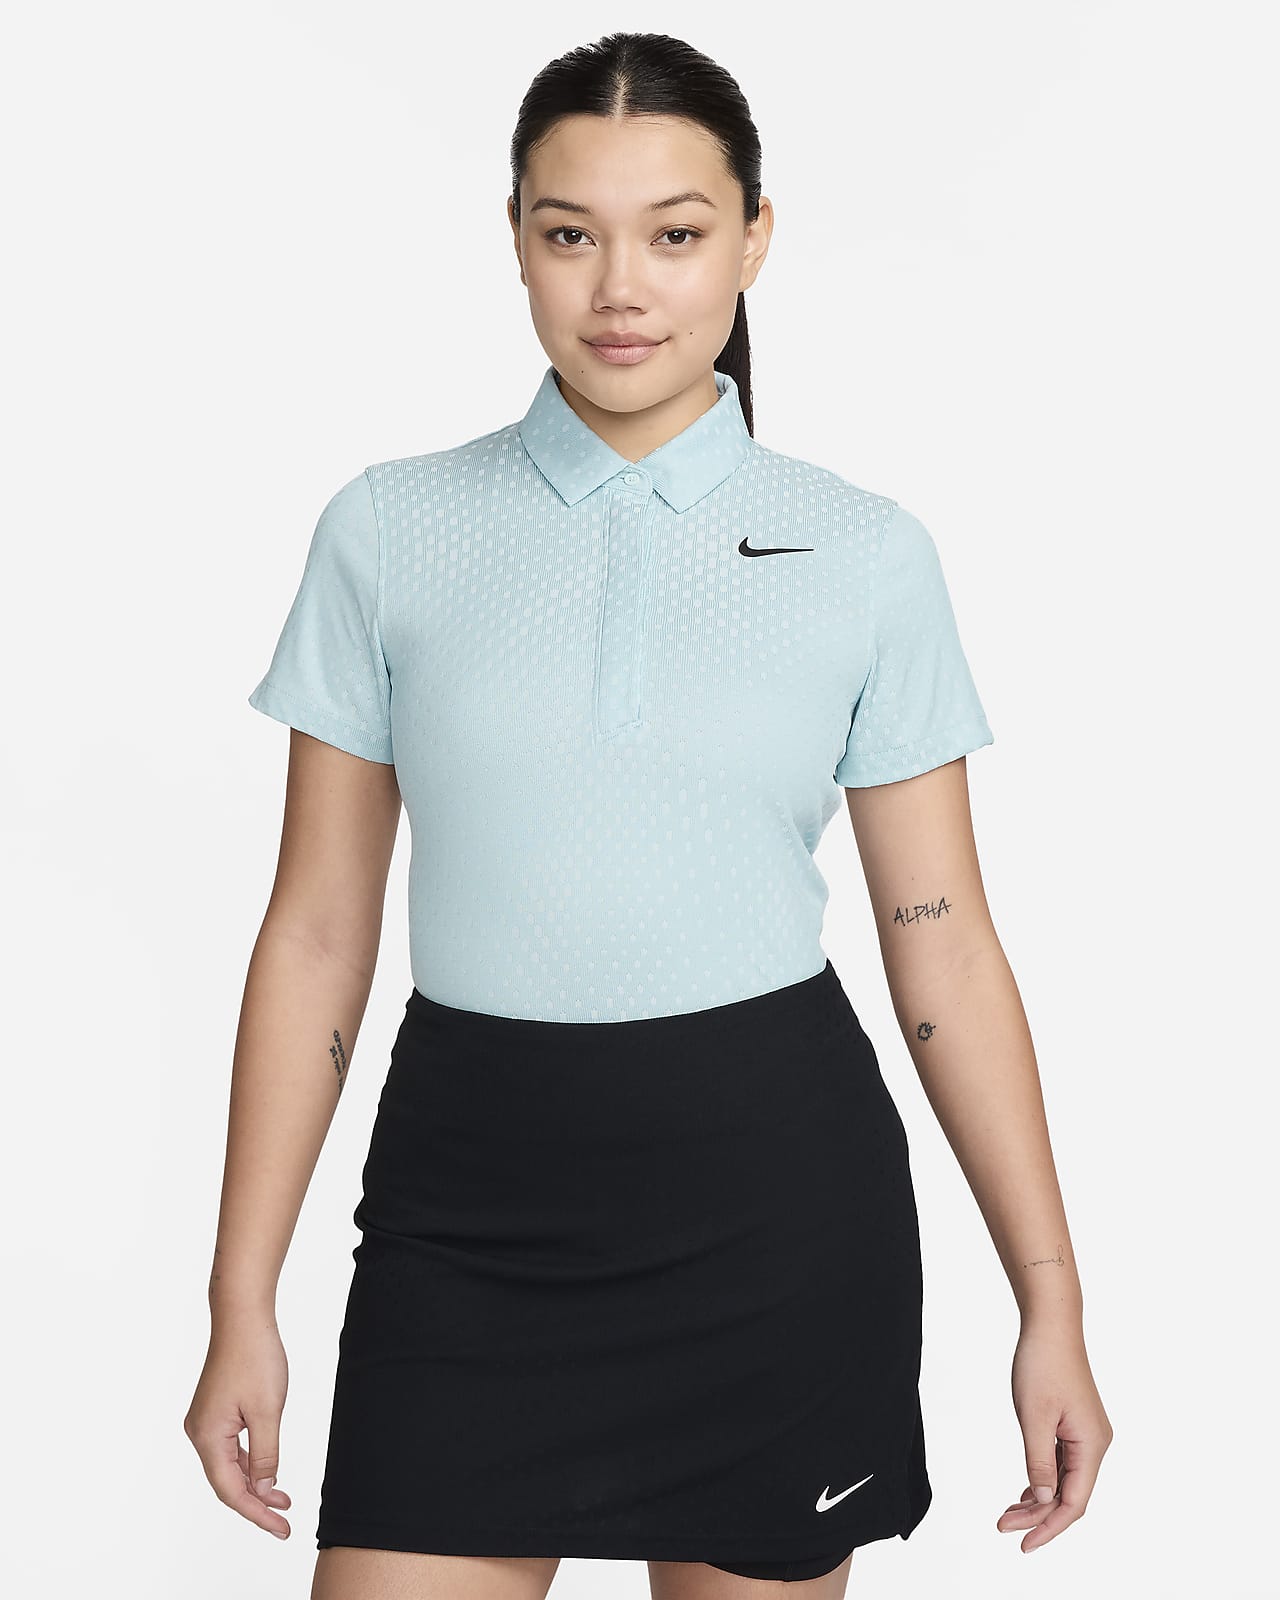 Dámská golfová polokošile Nike Tour Dri-FIT ADV s krátkým rukávem